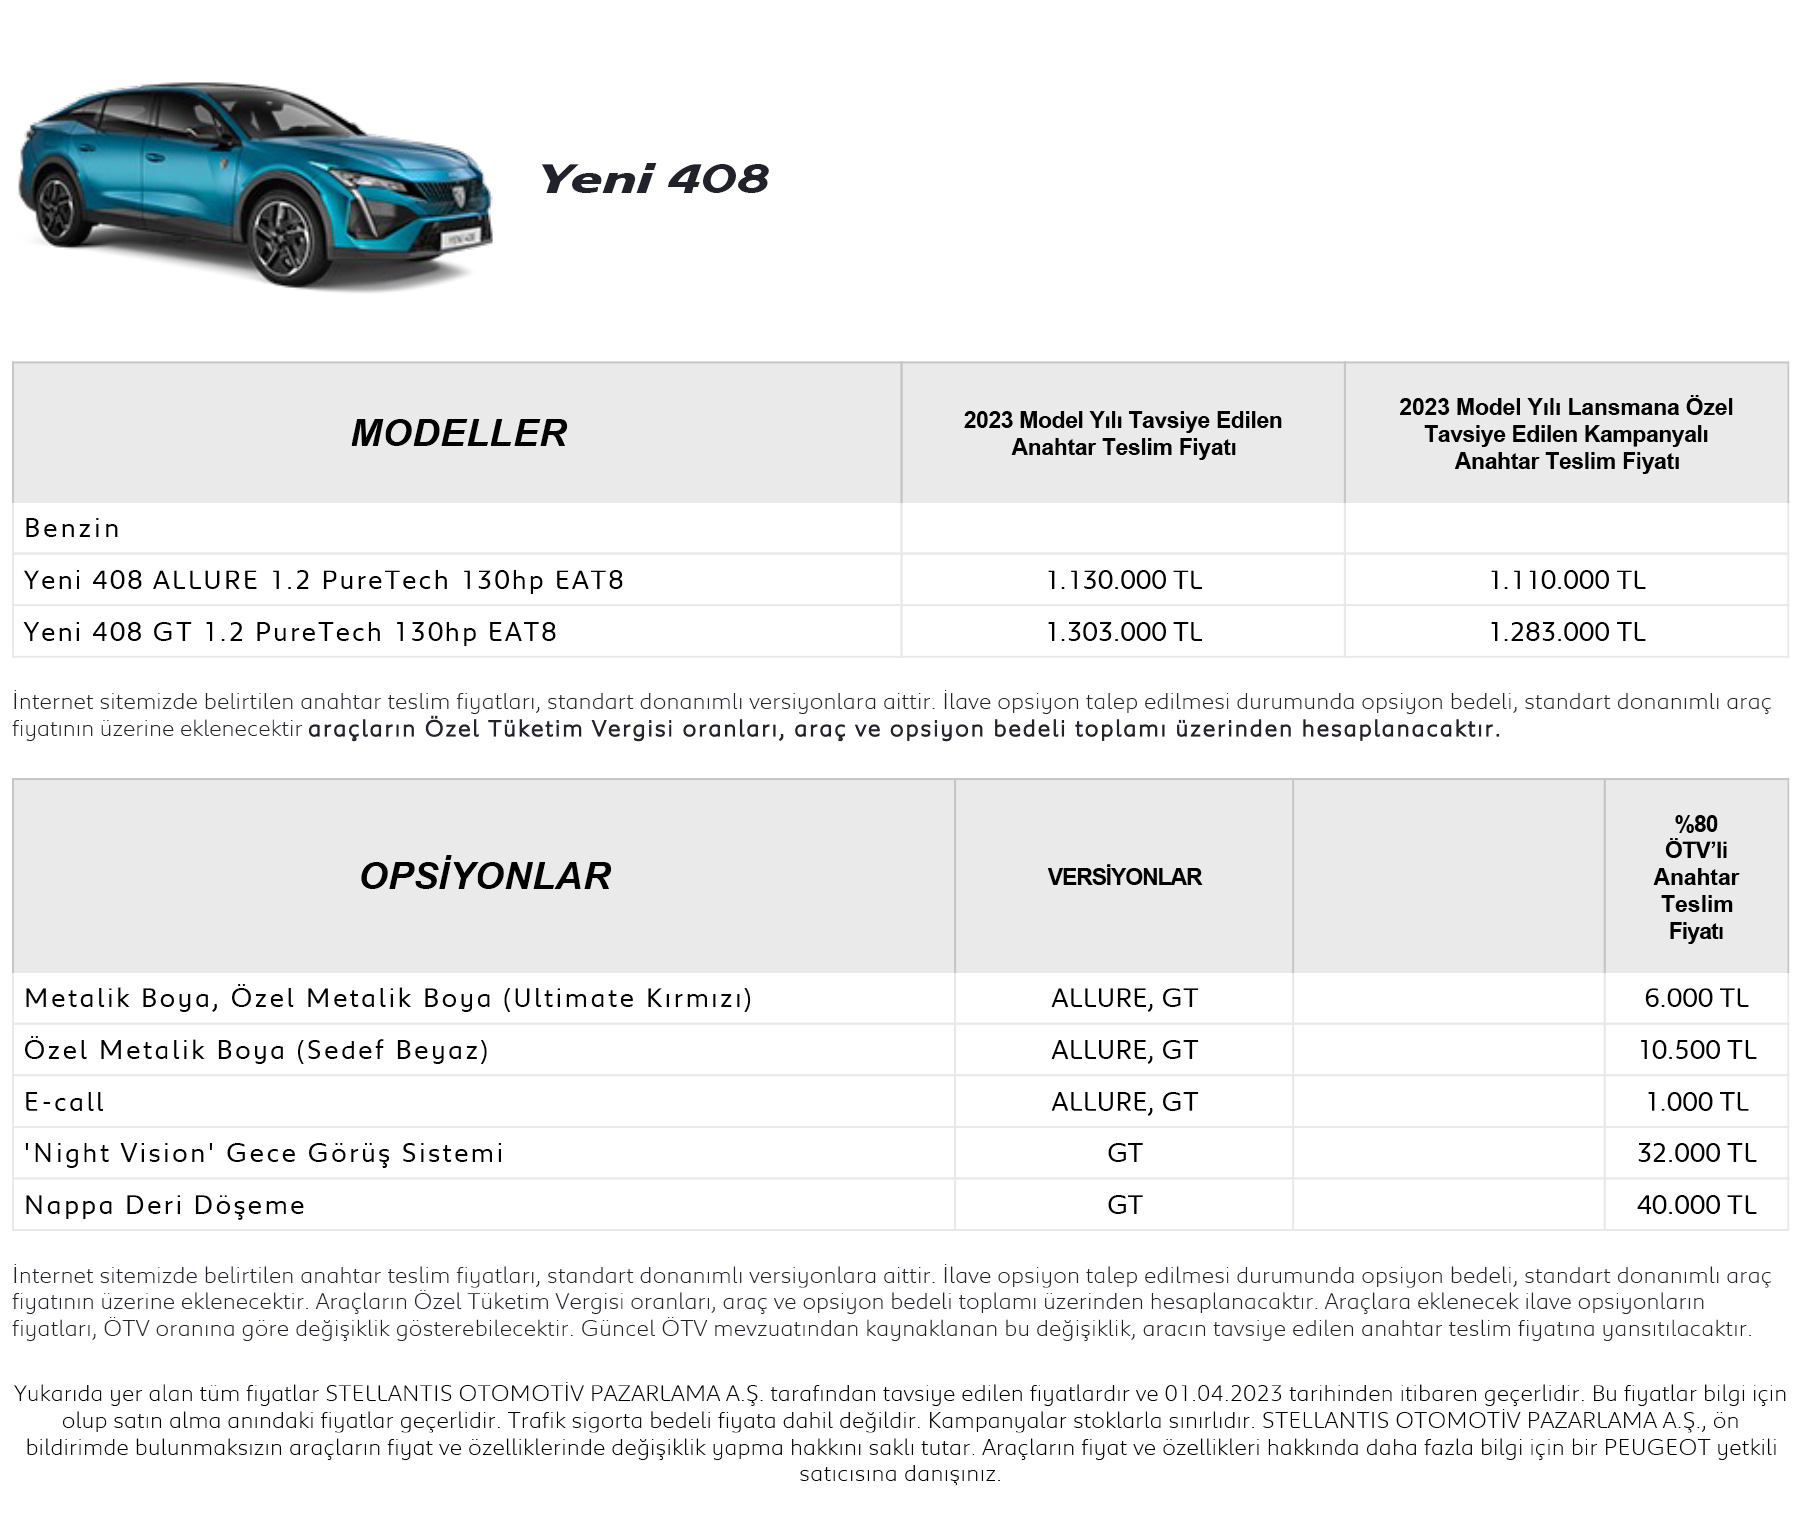 Peugeot Yeni 408 Fiyat Listesi